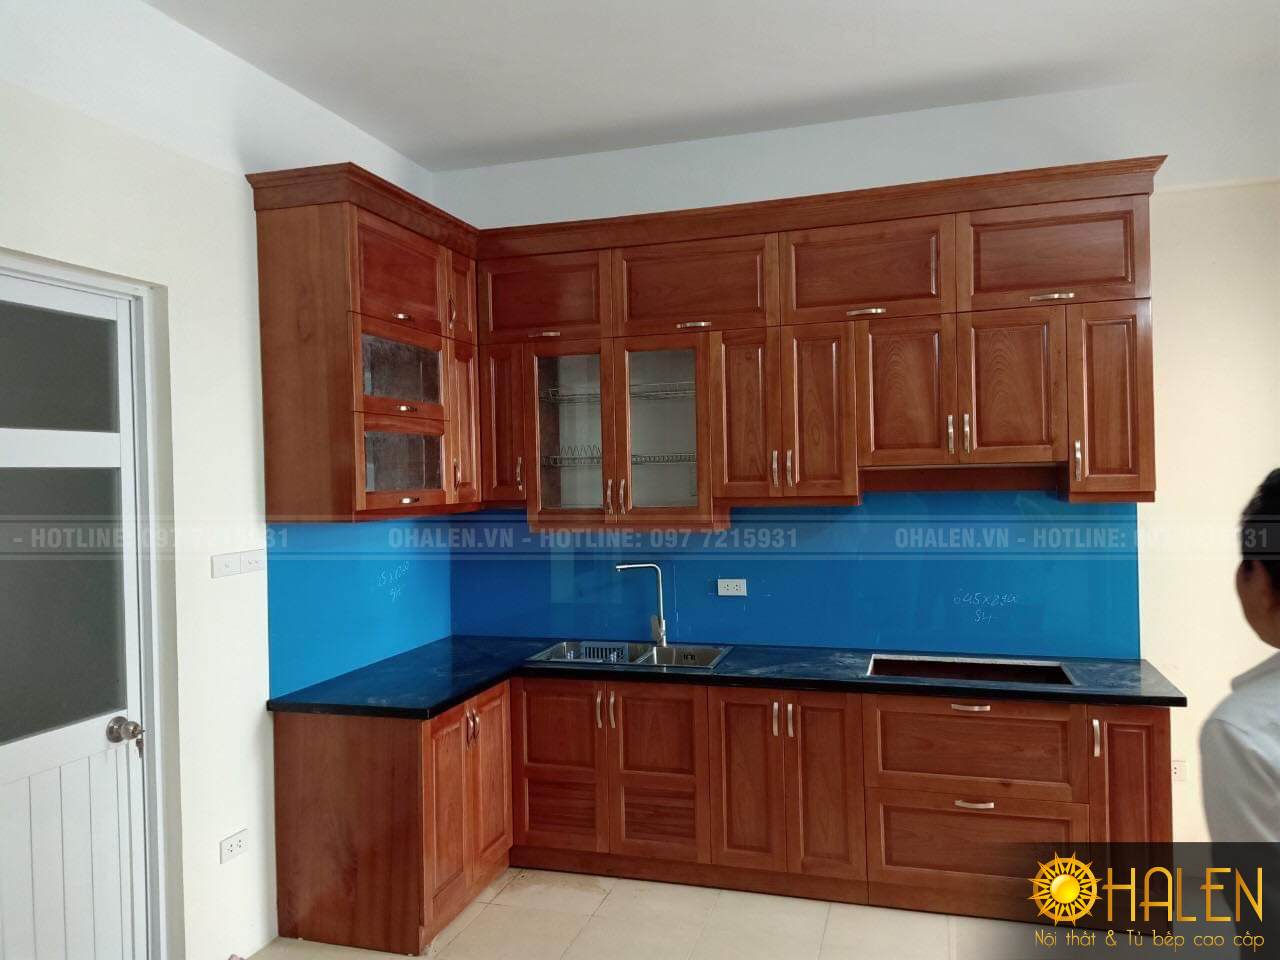 Tủ bếp gỗ xoan đào phun màu cánh gián ấm cúng với điểm nhấn là kính bếp màu xanh dương